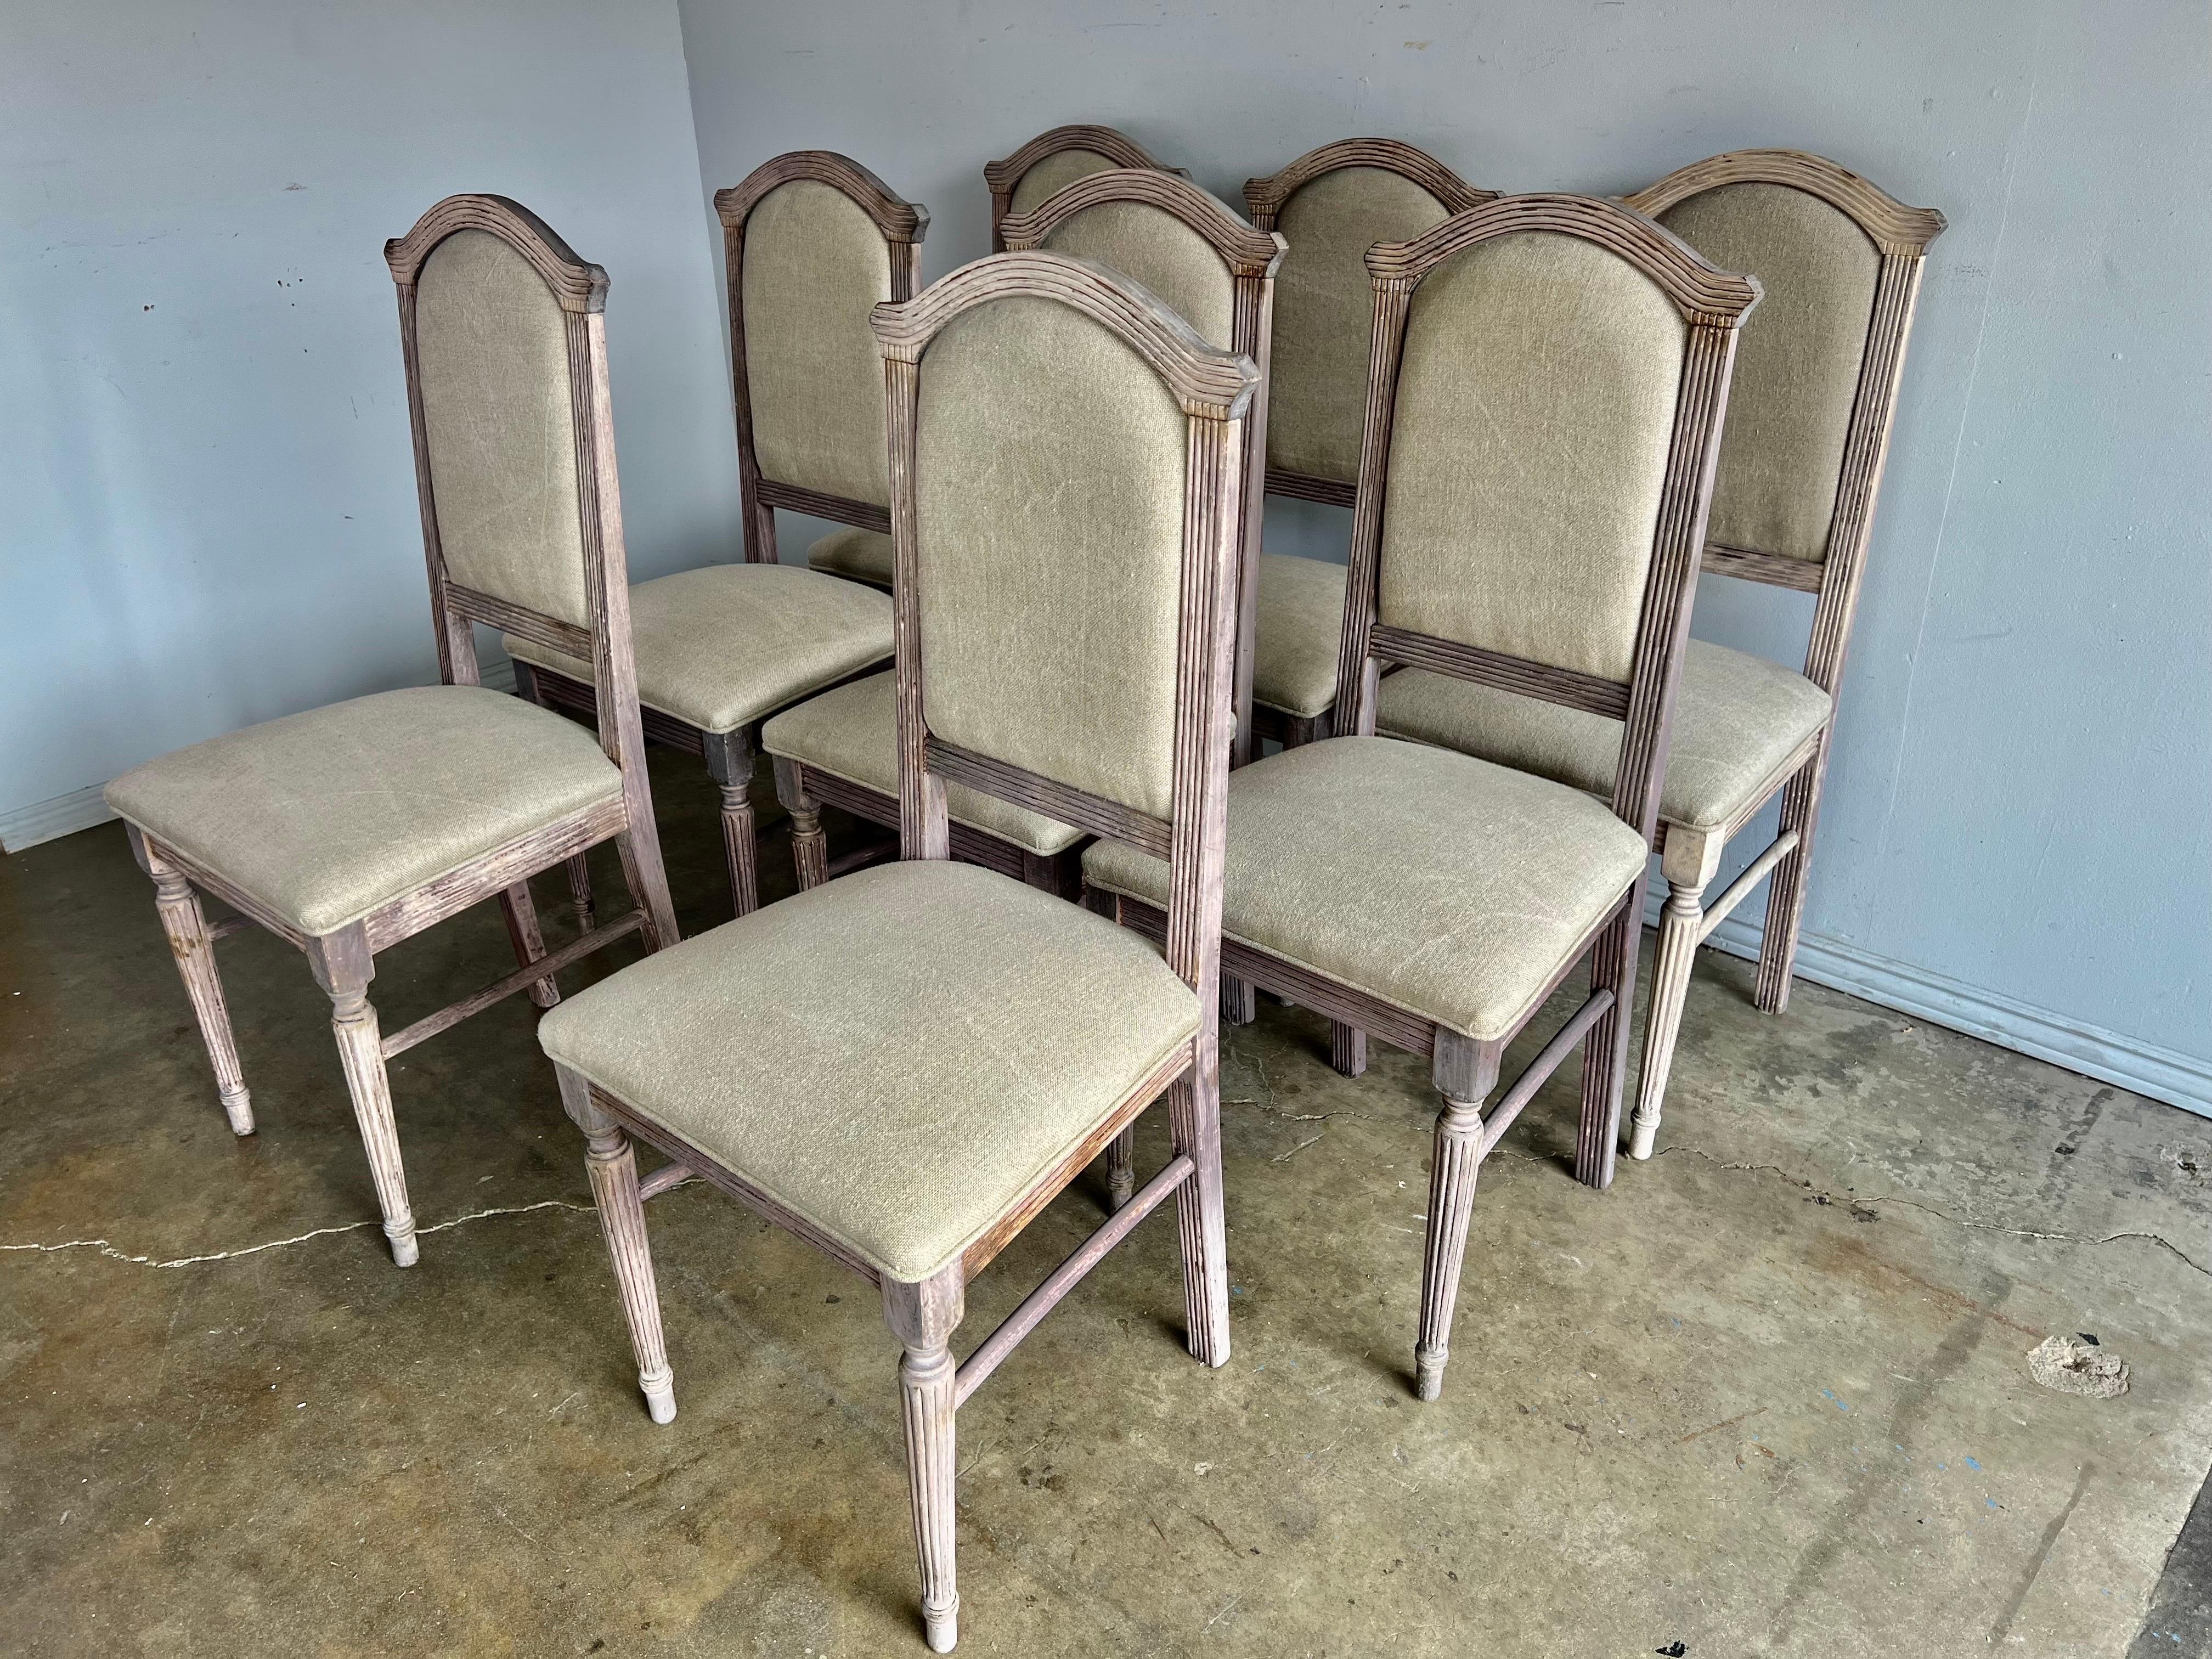 Satz von acht gebleichten italienischen Esszimmerstühlen im neoklassischen Stil. Die Stühle sind neu mit belgischem Leinen gepolstert und mit einem Kordeldetail versehen.